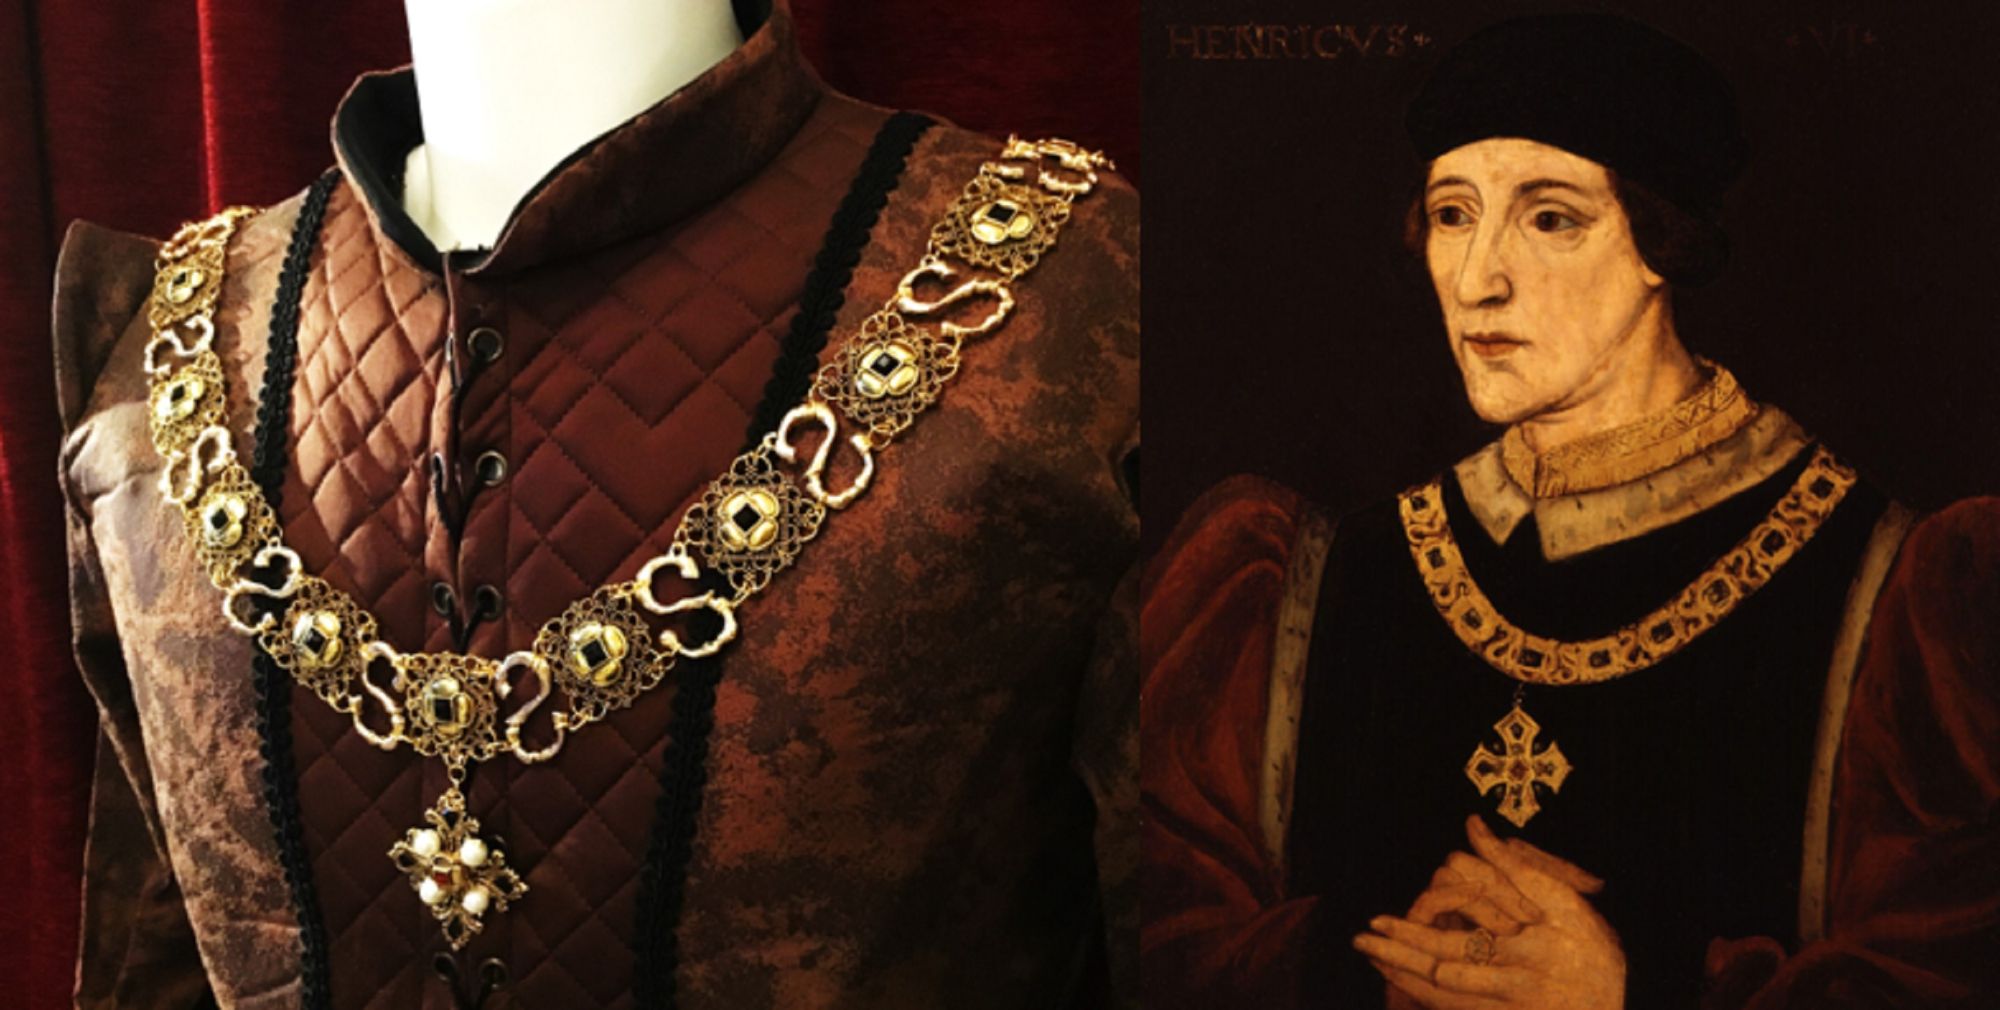 Henry VI portrait chain compare